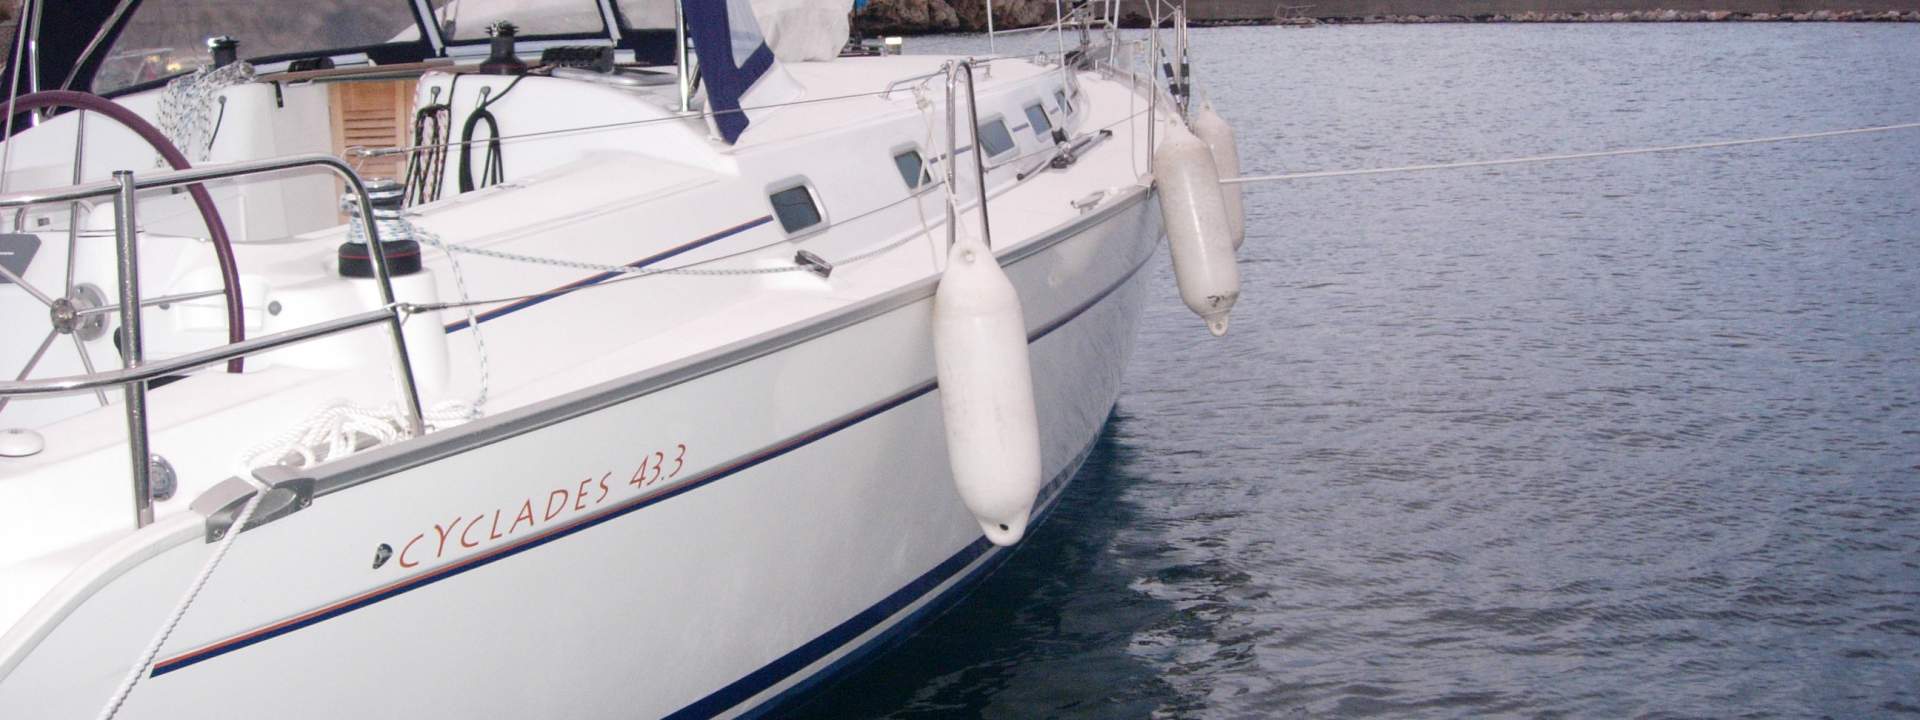 Sailboat Cyclades 43.3